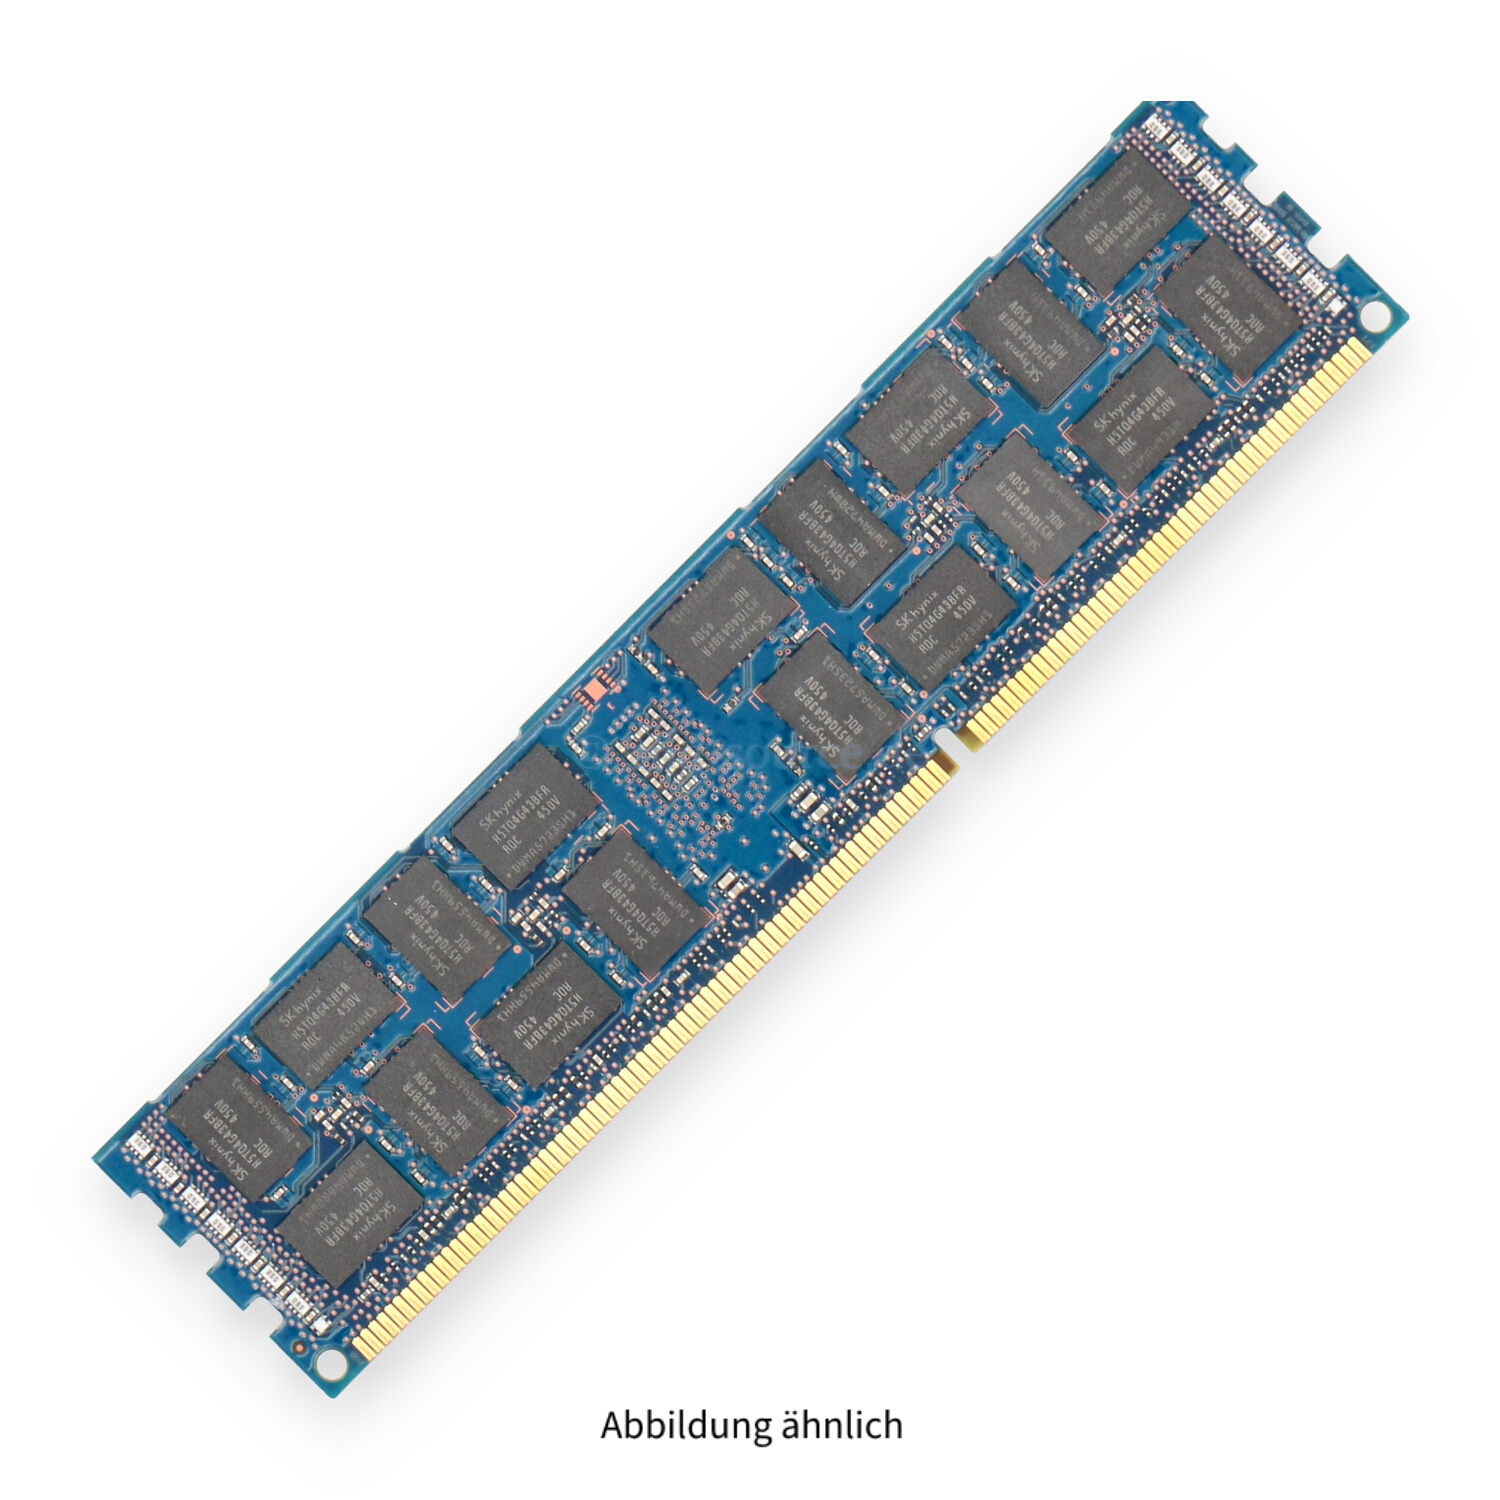 HPE 16GB PC3-14900R DIMM Dual Rank x4 (DDR3-1866) Registered ECC 708641-B21 712383-081 715274-001